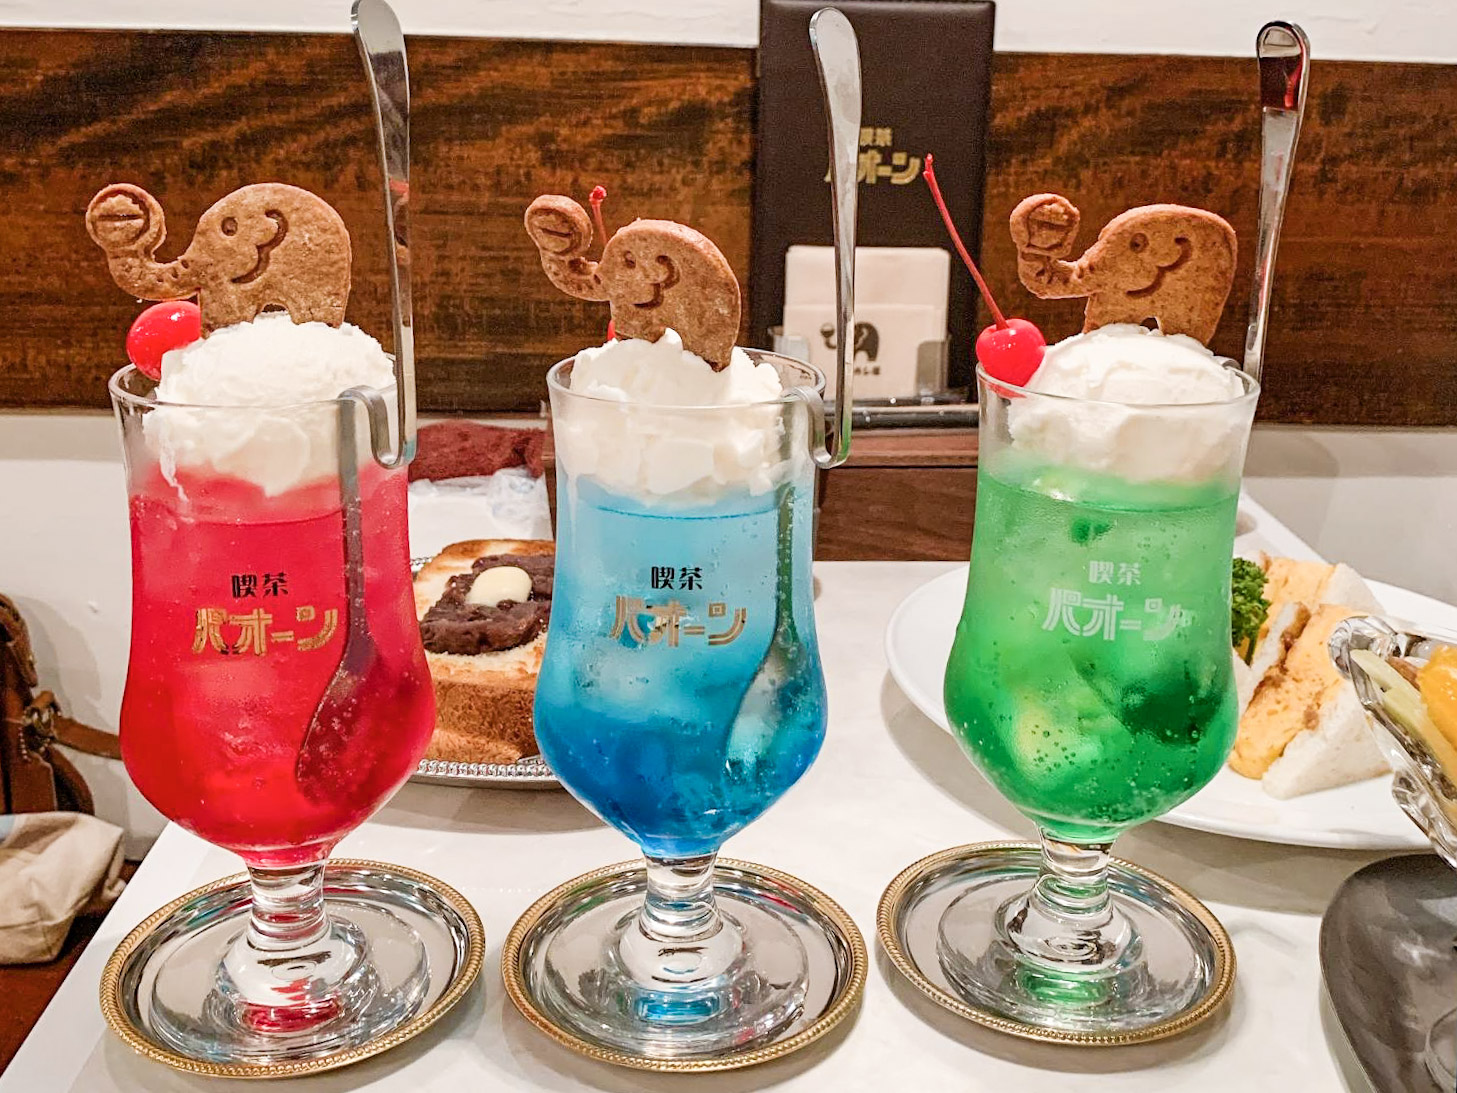 東京 レトロかわいい見た目で人気の クリームソーダ を飲めるカフェ4選 ガジェット通信 Getnews